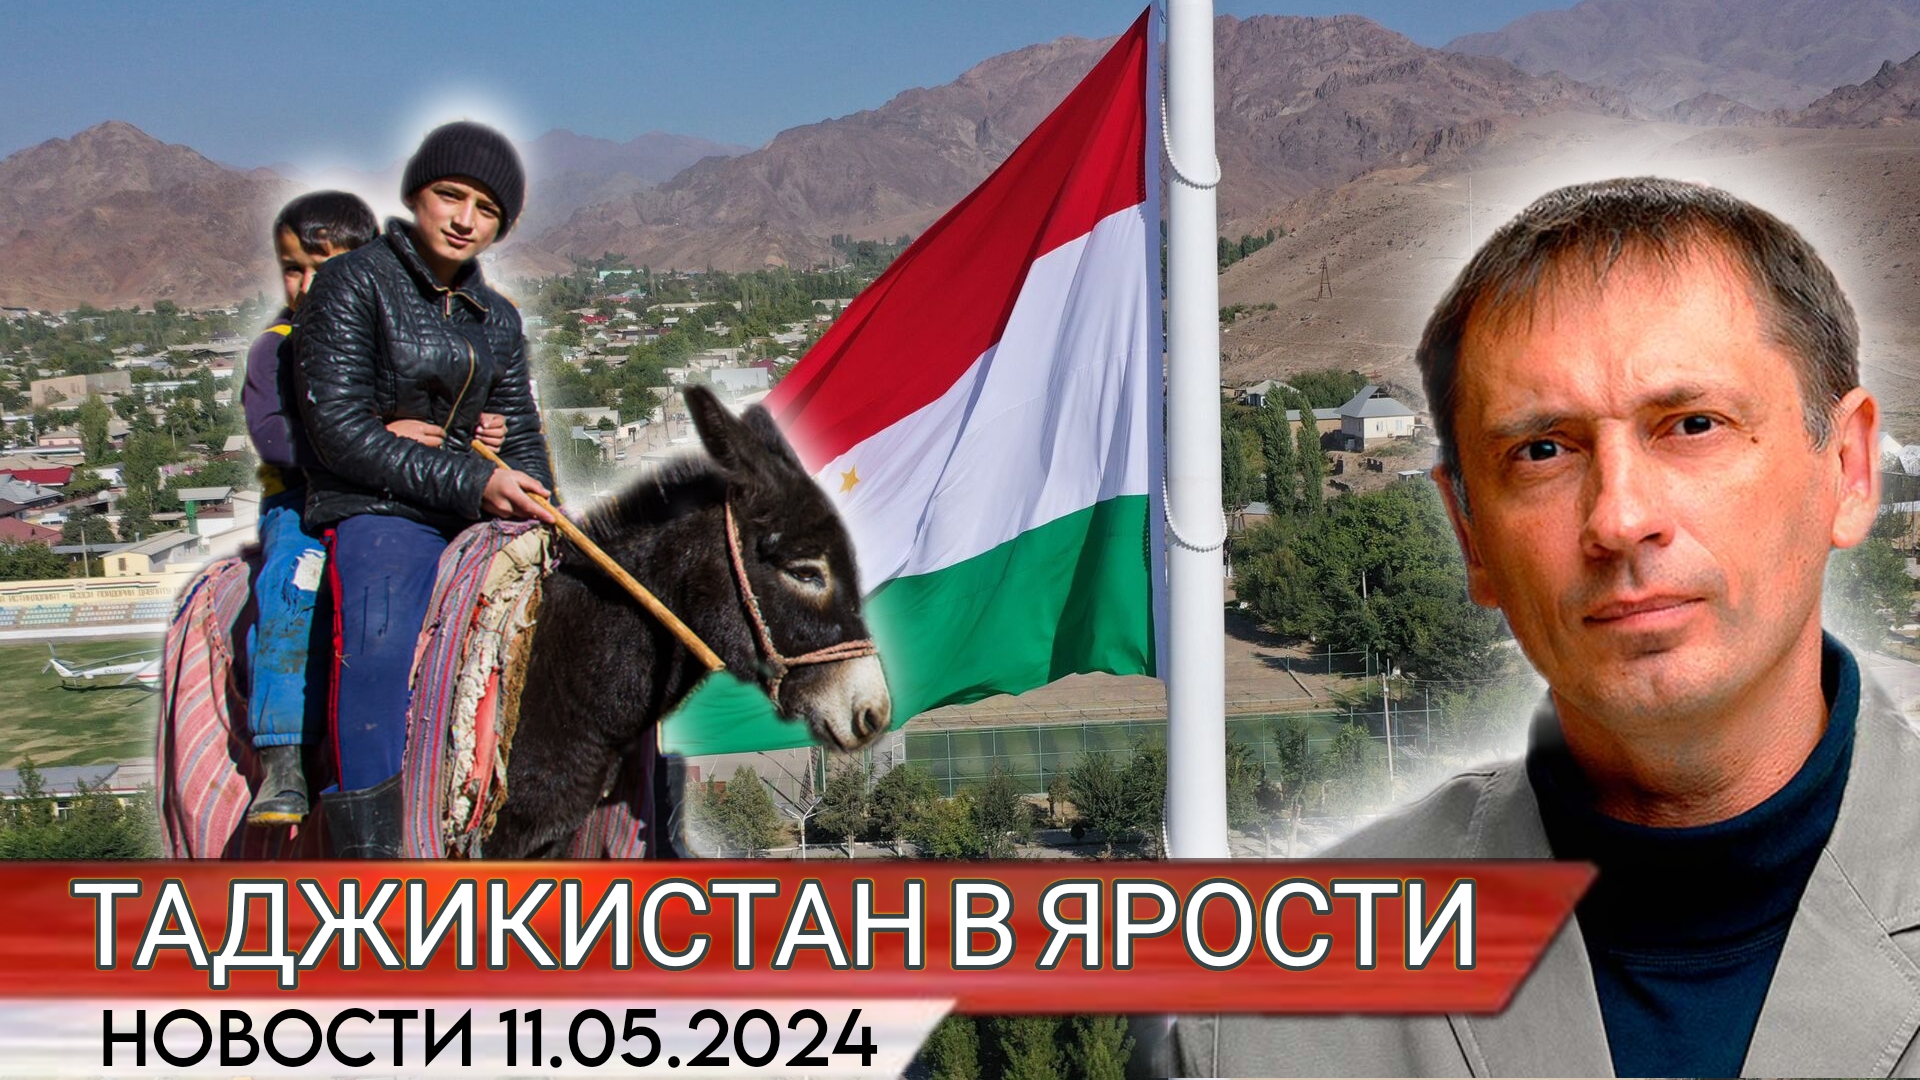 Таджикистан в ярости: Мигранты возвращаются в Душанбе без русских денег | БРЕКОТИН